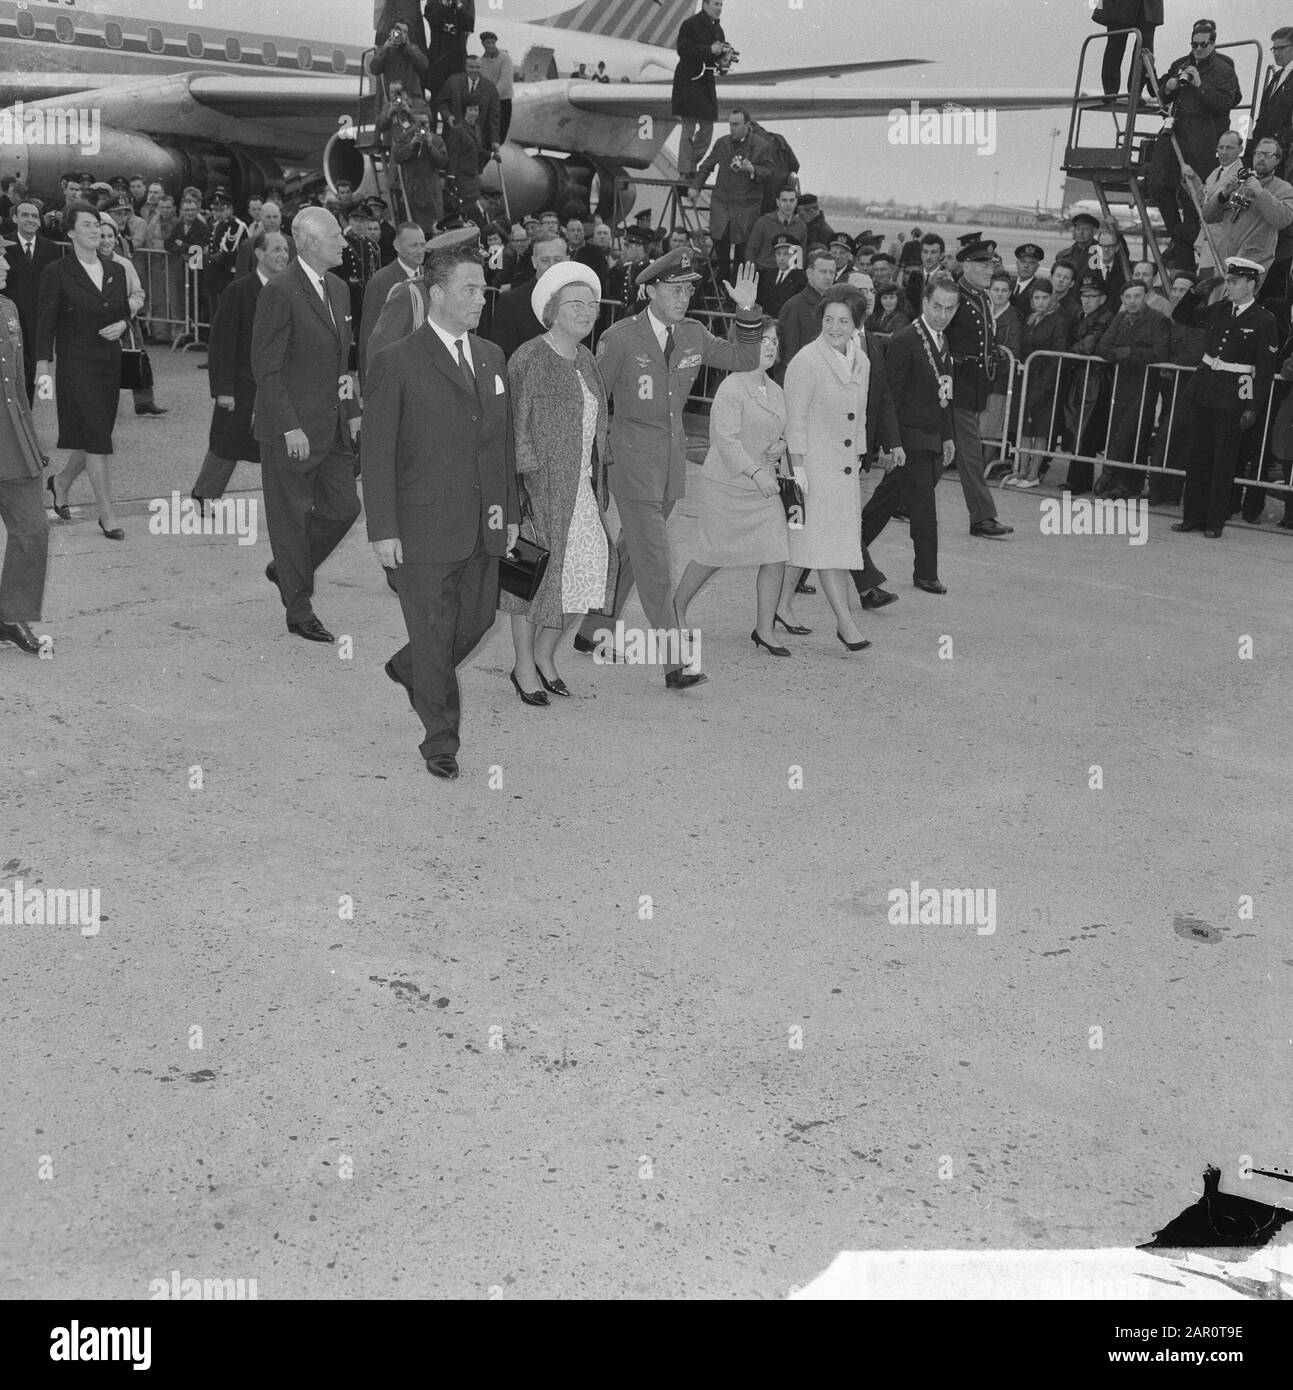 Coppia reale dal Messico, il primo Ministro Marijnen ha accompagnato la famiglia reale alle automobili d'attesa Data: 18 aprile 1964 luogo: Messico Nome personale: Marijnen, Victor Foto Stock